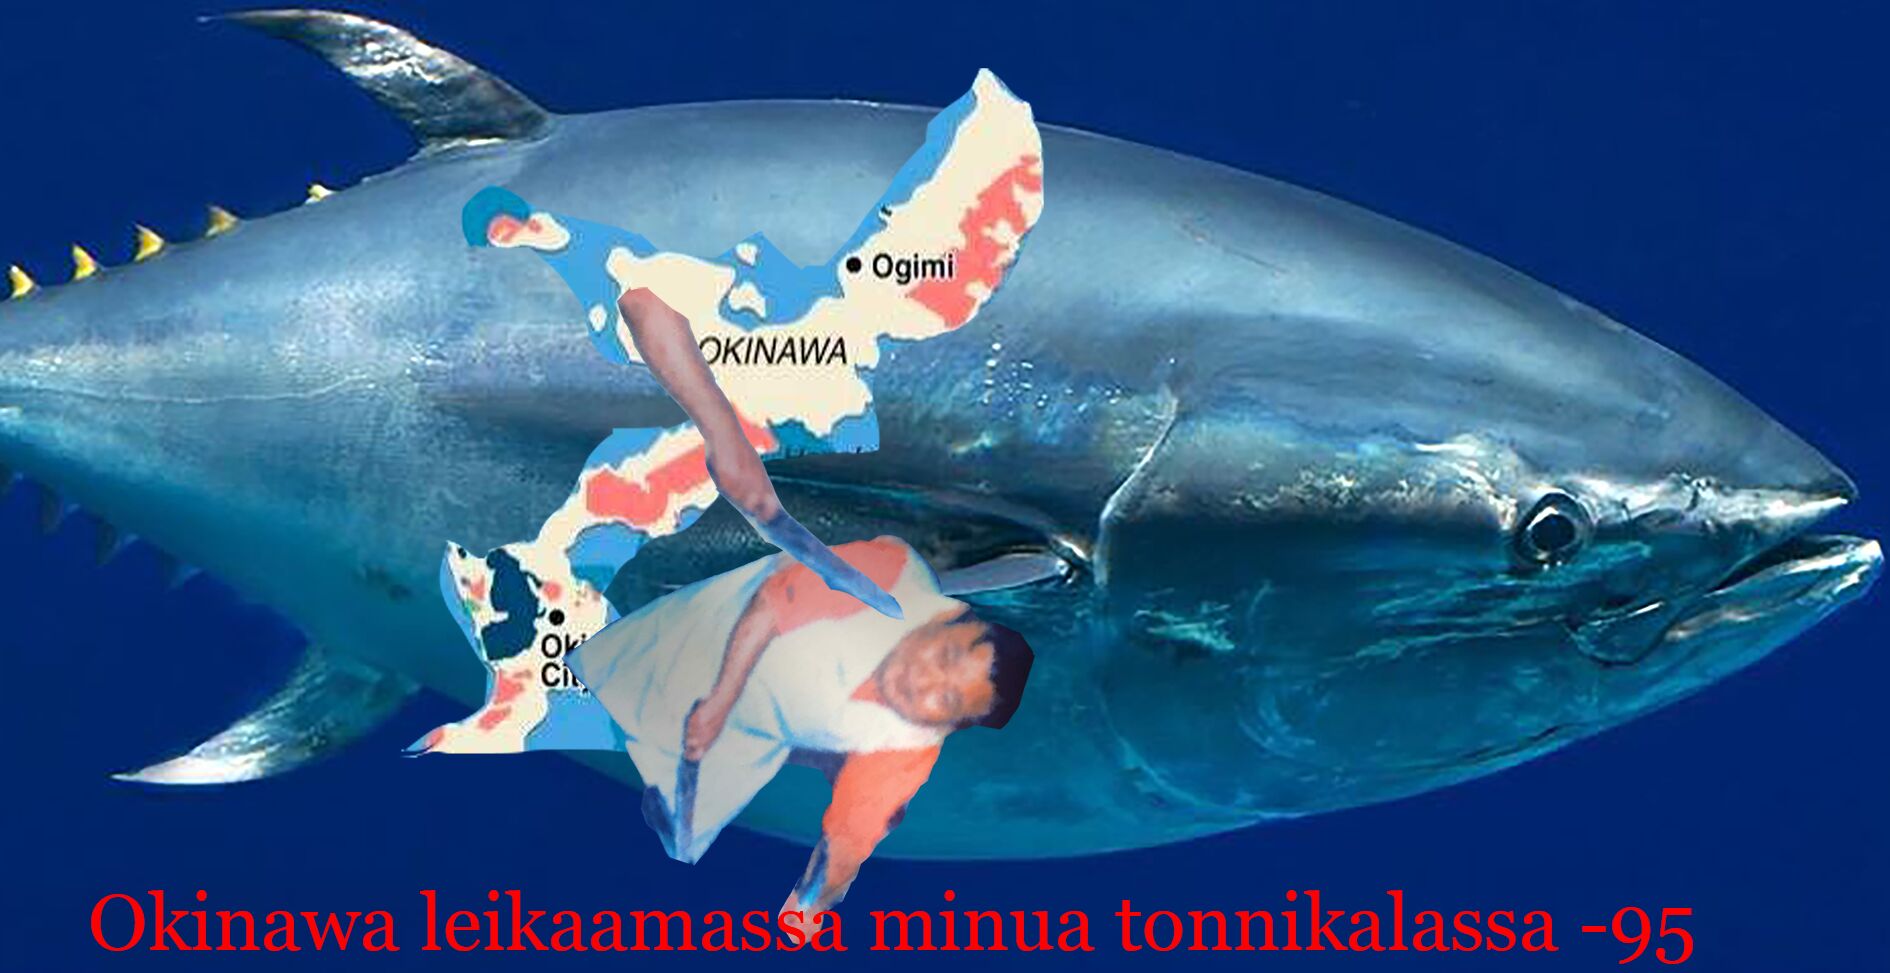 Okinawa leikkaamassa minua tonnikalassa -95